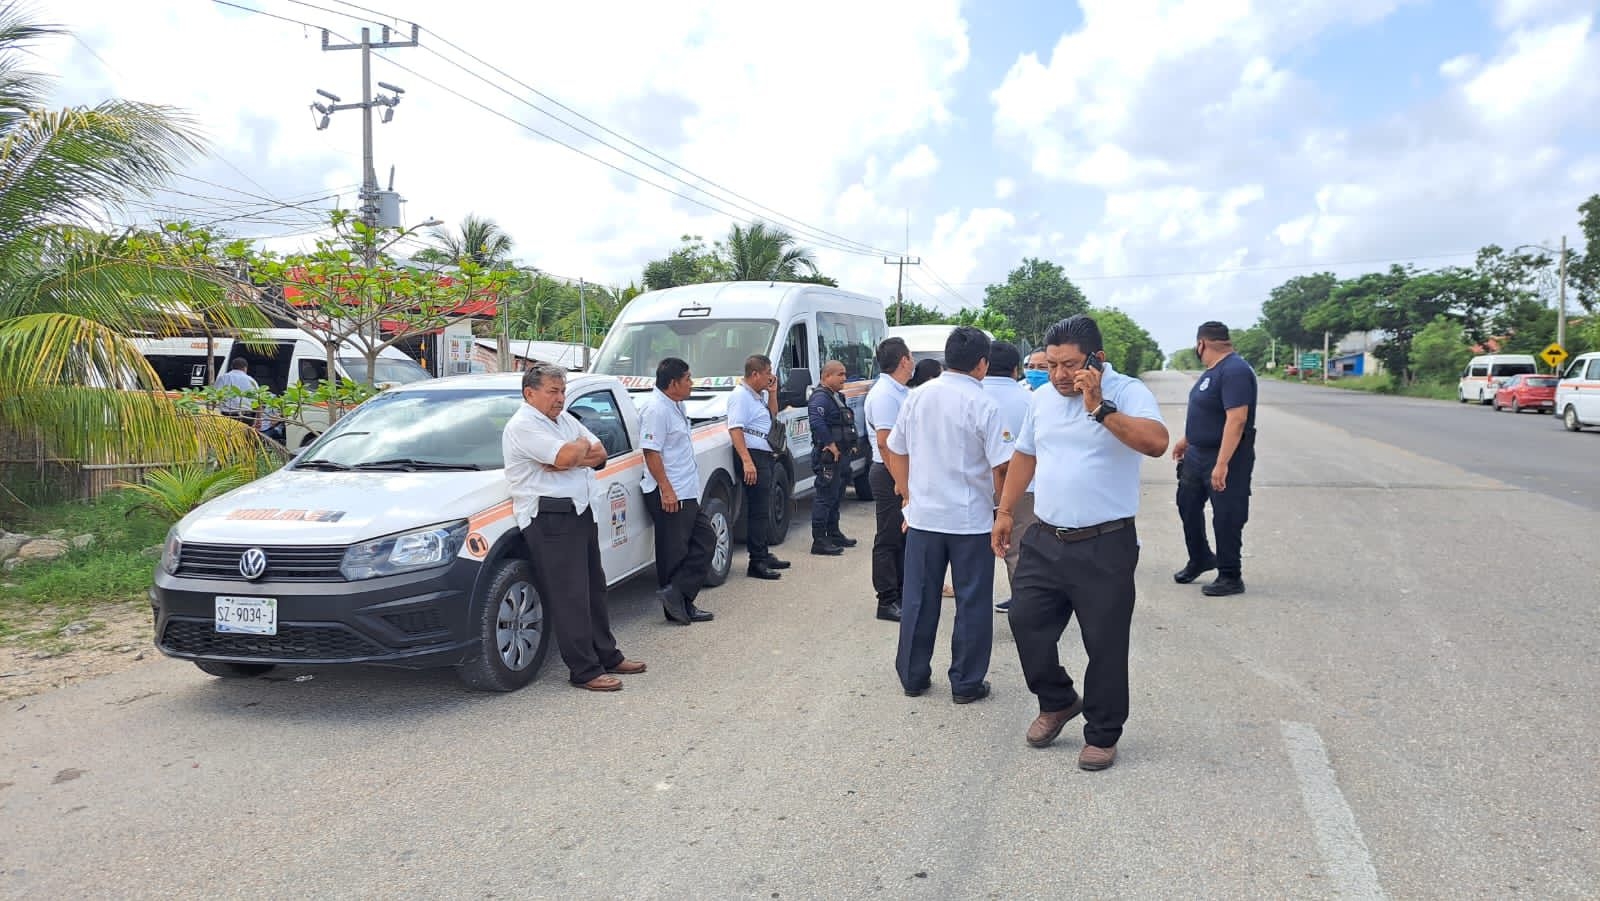 Transportistas de Carrillo Puerto y Chetumal protagonizan conato de pleito